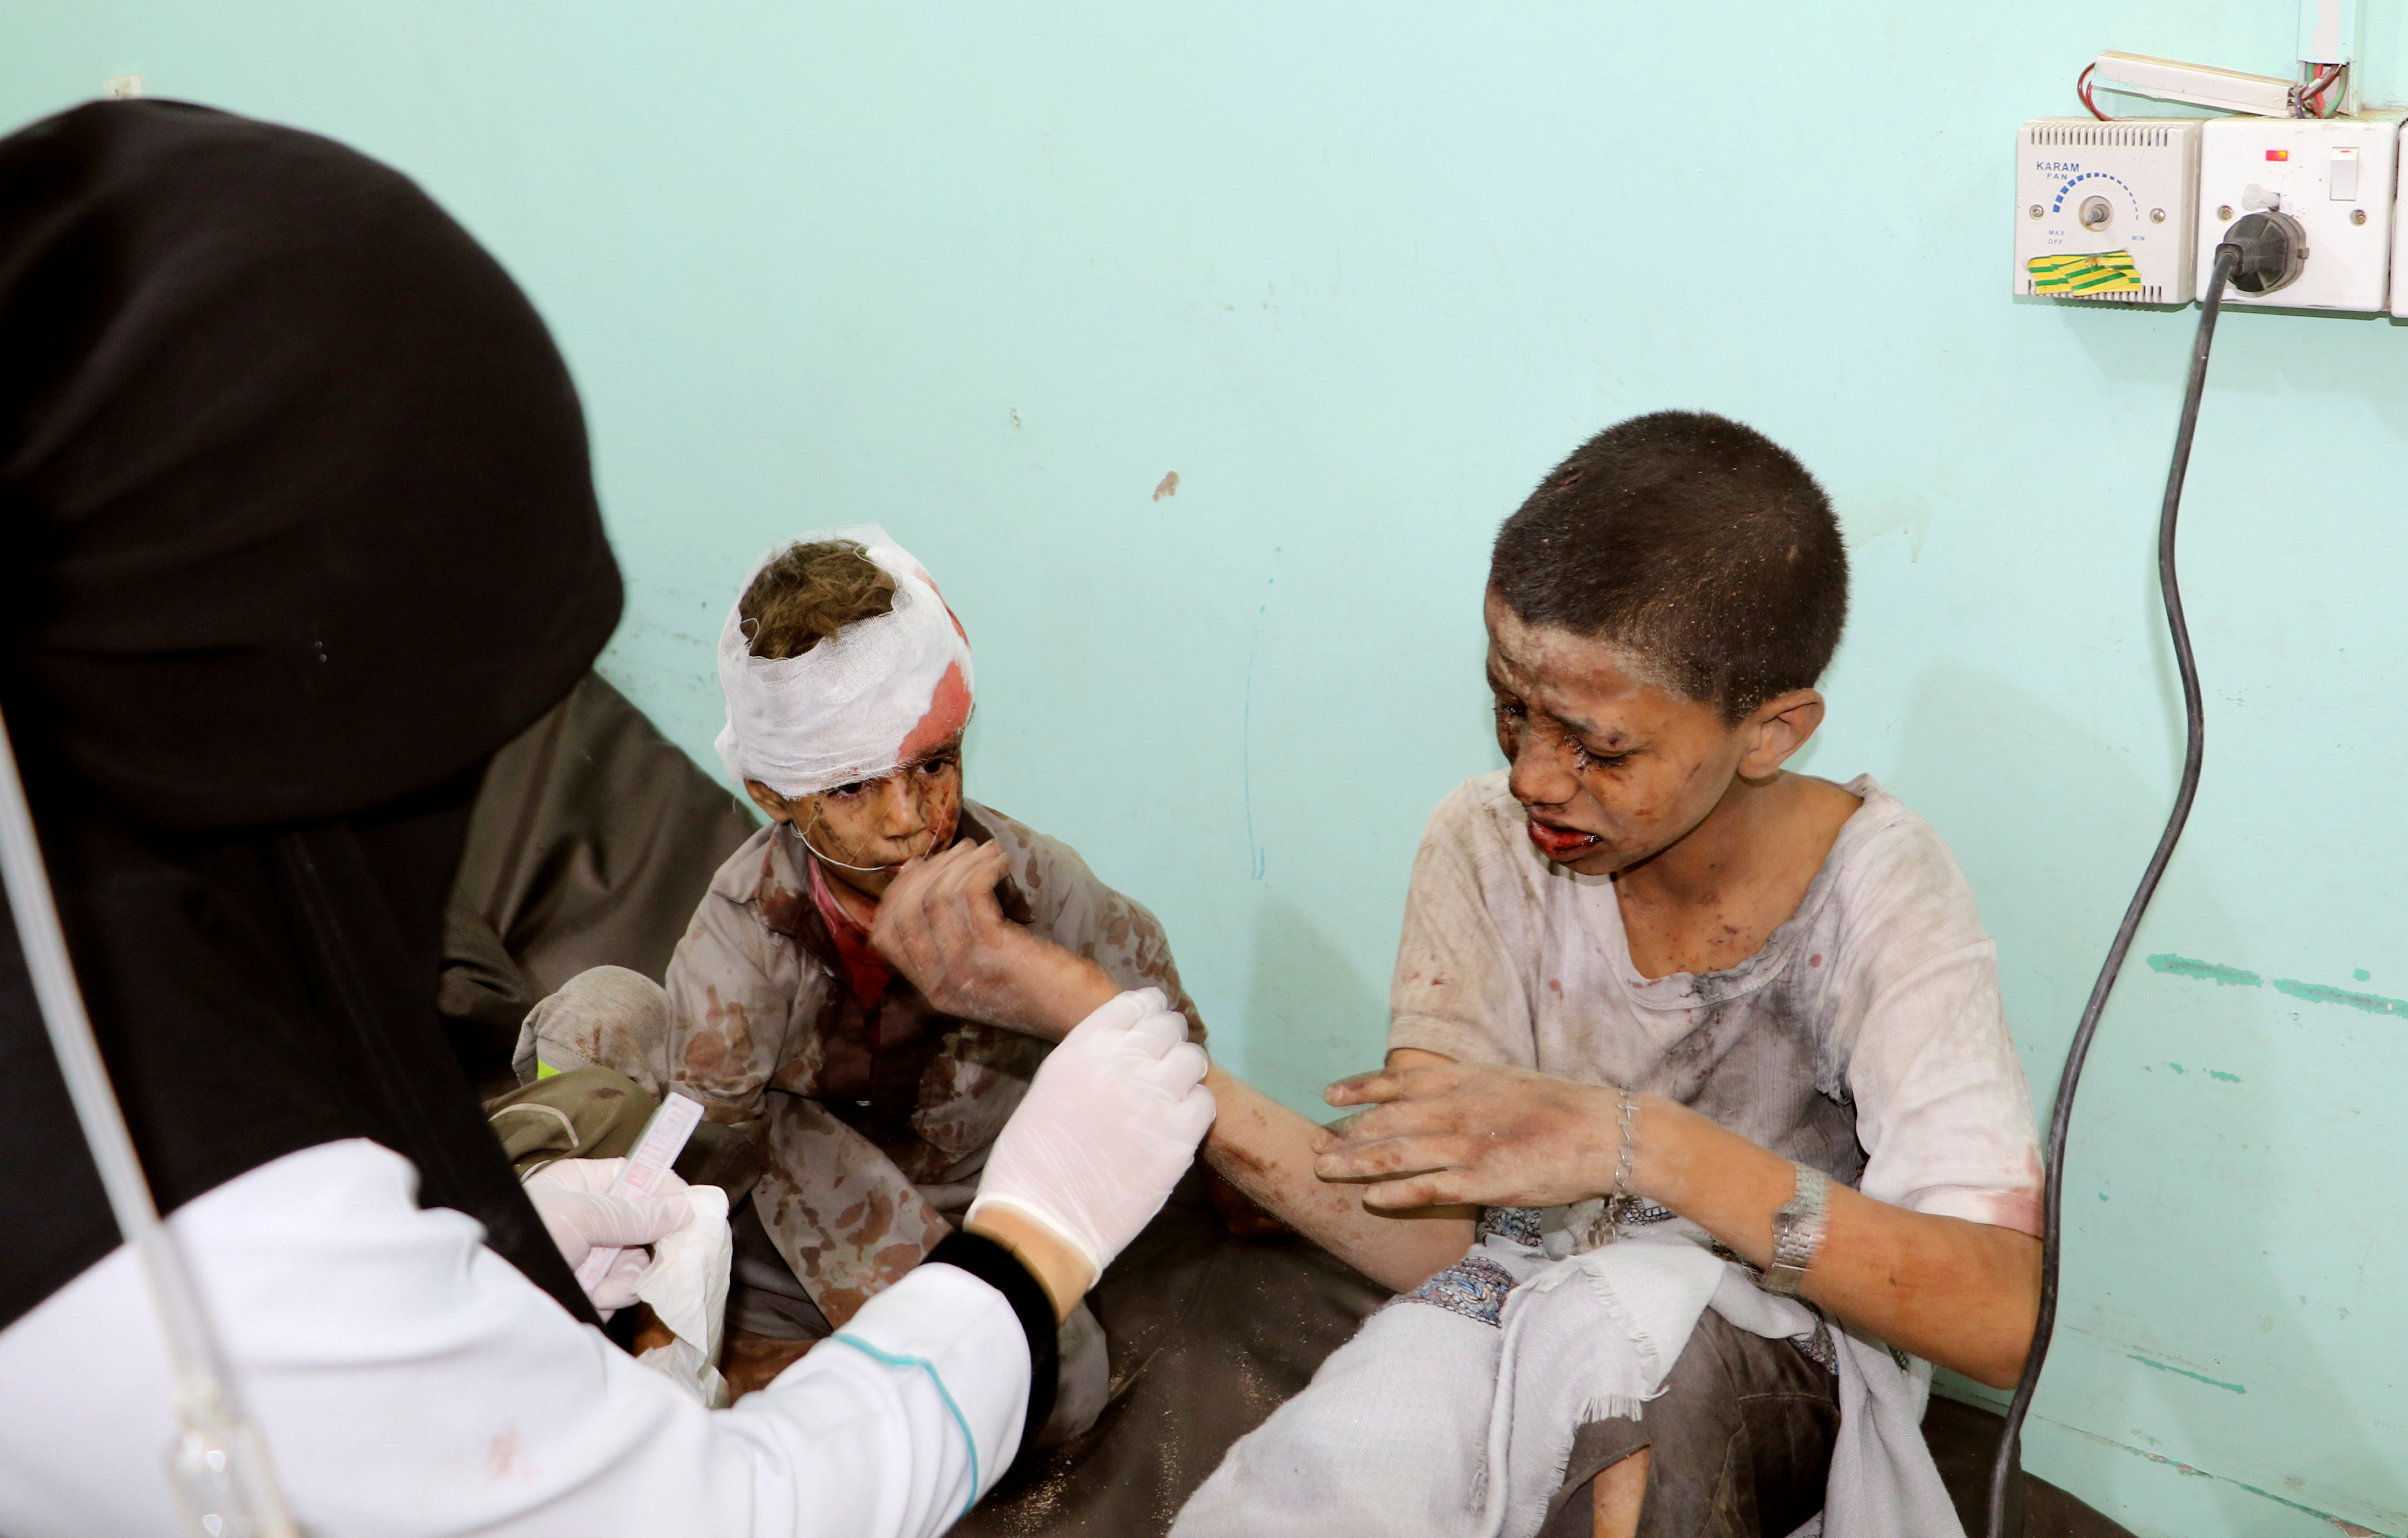 La bomba que mató a 51 personas en un bus en Yemen fue vendida por EEUU, según CNN